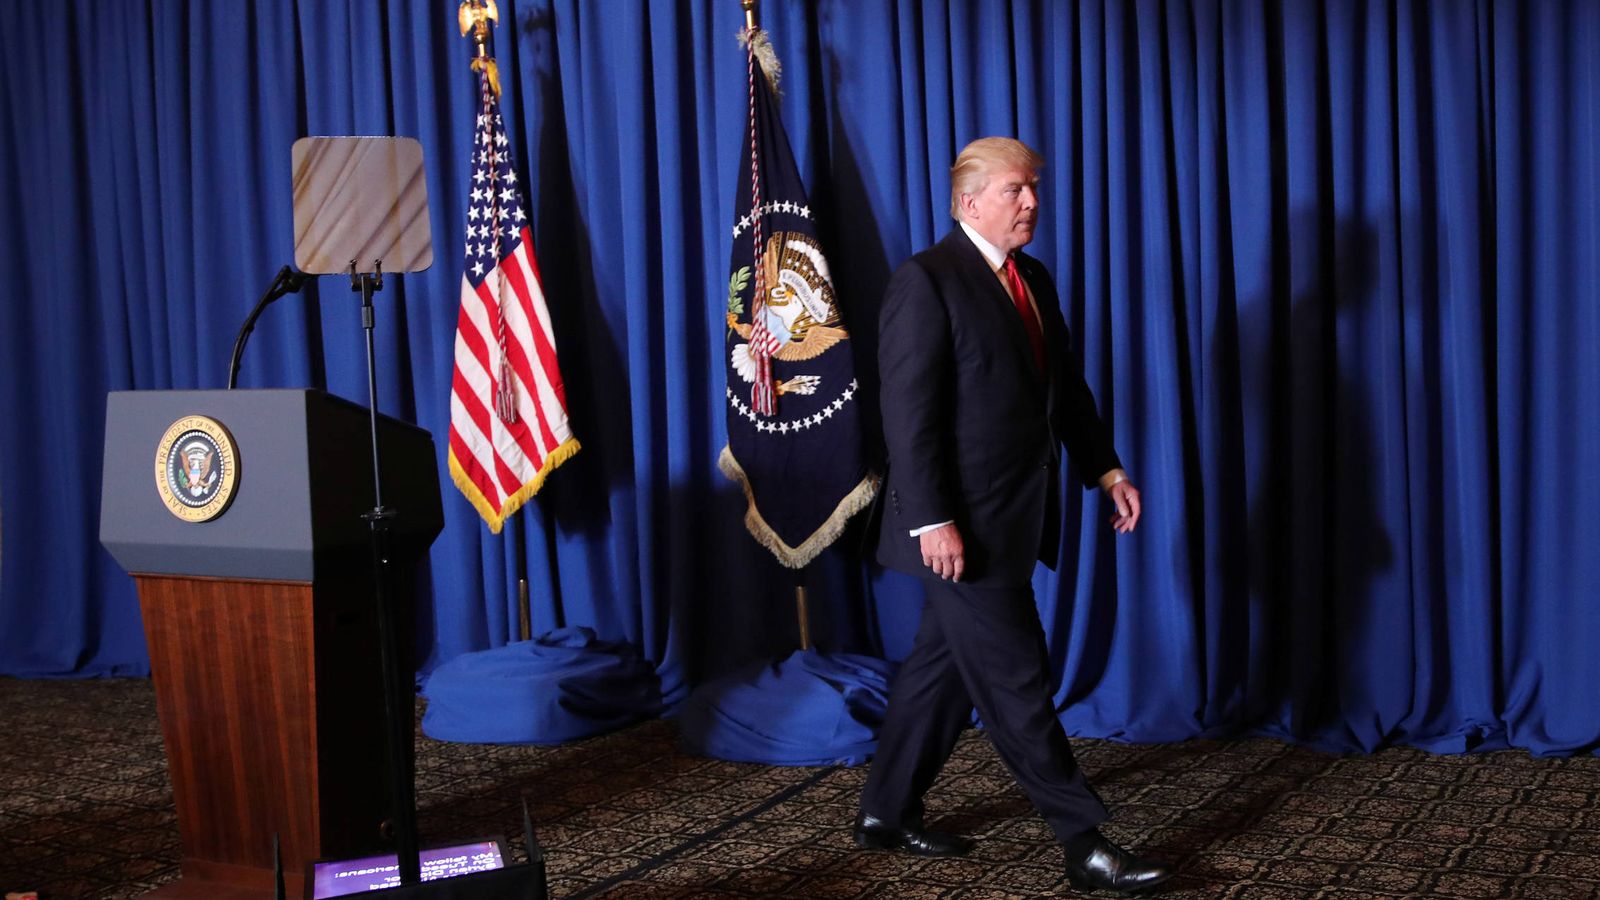 Foto: El presidente Trump abandona la tribuna tras hacer una declaración sobre el ataque con misiles contra una base militar en Siria, el 6 de abril de 2017. (Reuters)